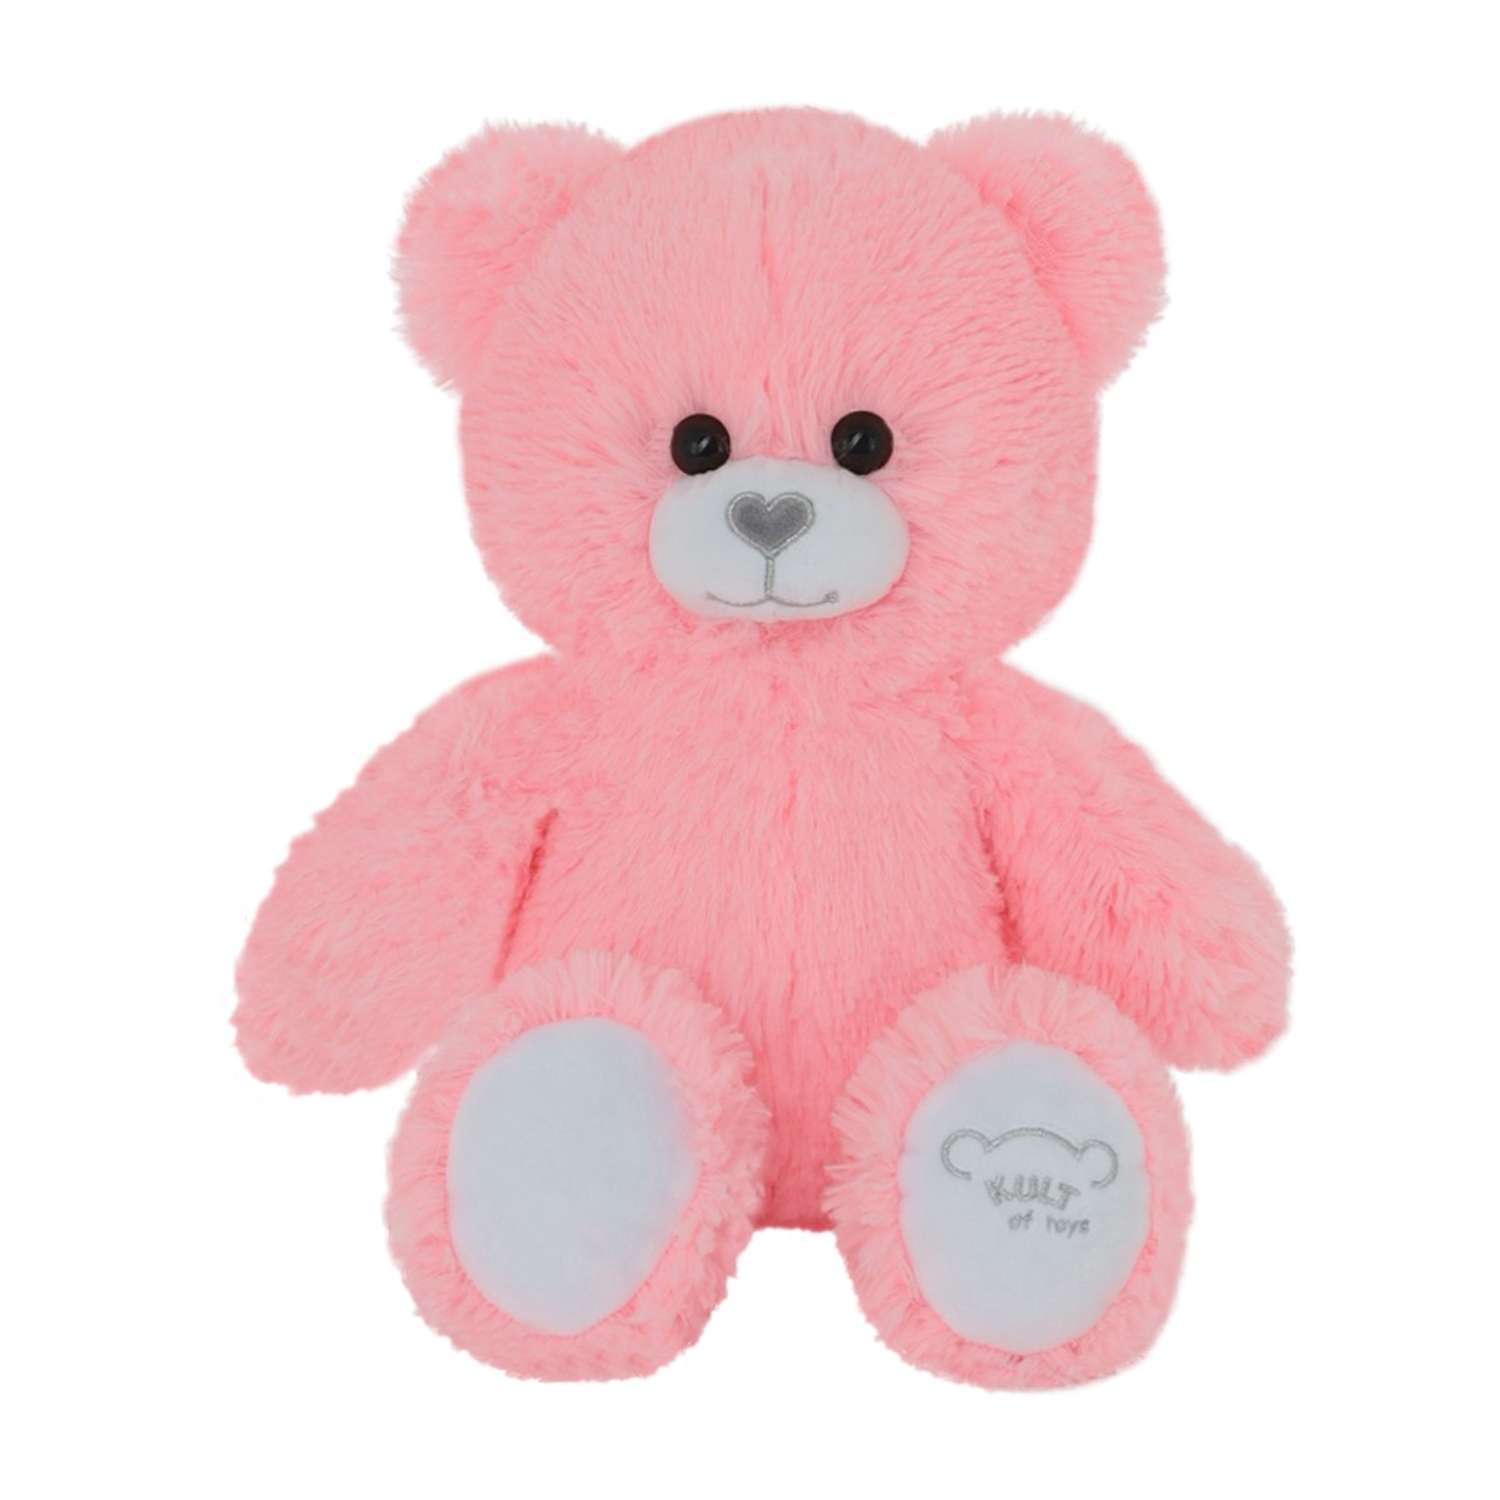 Мягкая игрушка KULT of toys плюшевый медведь color bear розовый 50 см - фото 1